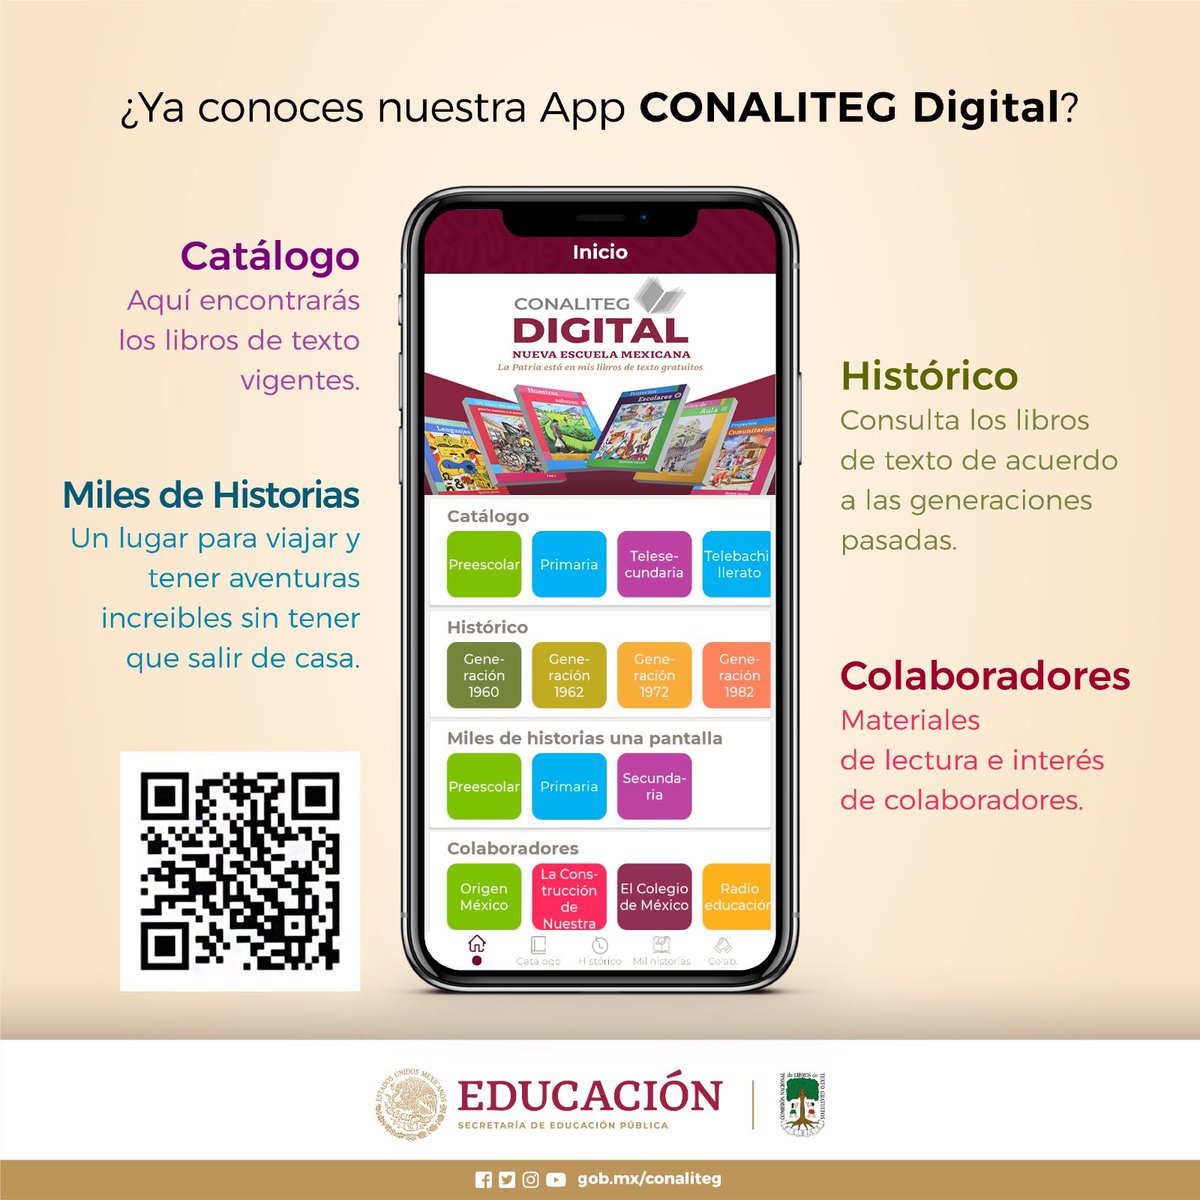 El catálogo histórico de la App @Conaliteg tiene los libros de texto gratuitos icónicos de la @SEP_mx con los que creciste. Descárgala, consúltalos, compártelos y #Repasa tus conocimientos. youtube.com/watch?v=lCaQh-… #LibrosEnEspañol #ConalitegDigital #EducaciónIME